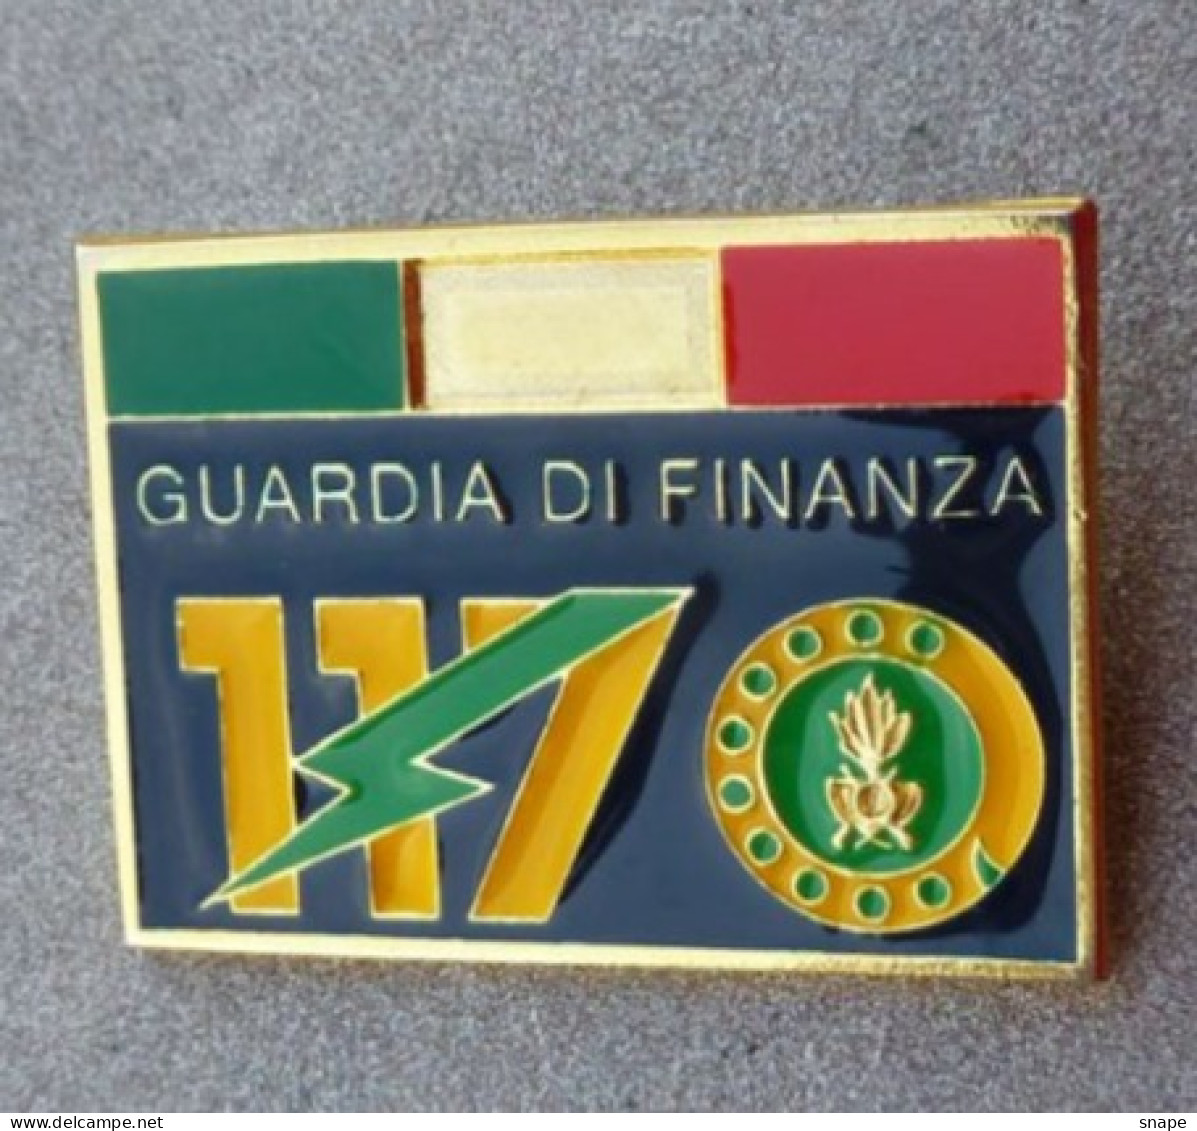 Distintivo Pubblicitario 117 - Guardia Di Finanza - Dismesso - Anni 80/90 - Used Obsolete (286) - Police & Gendarmerie